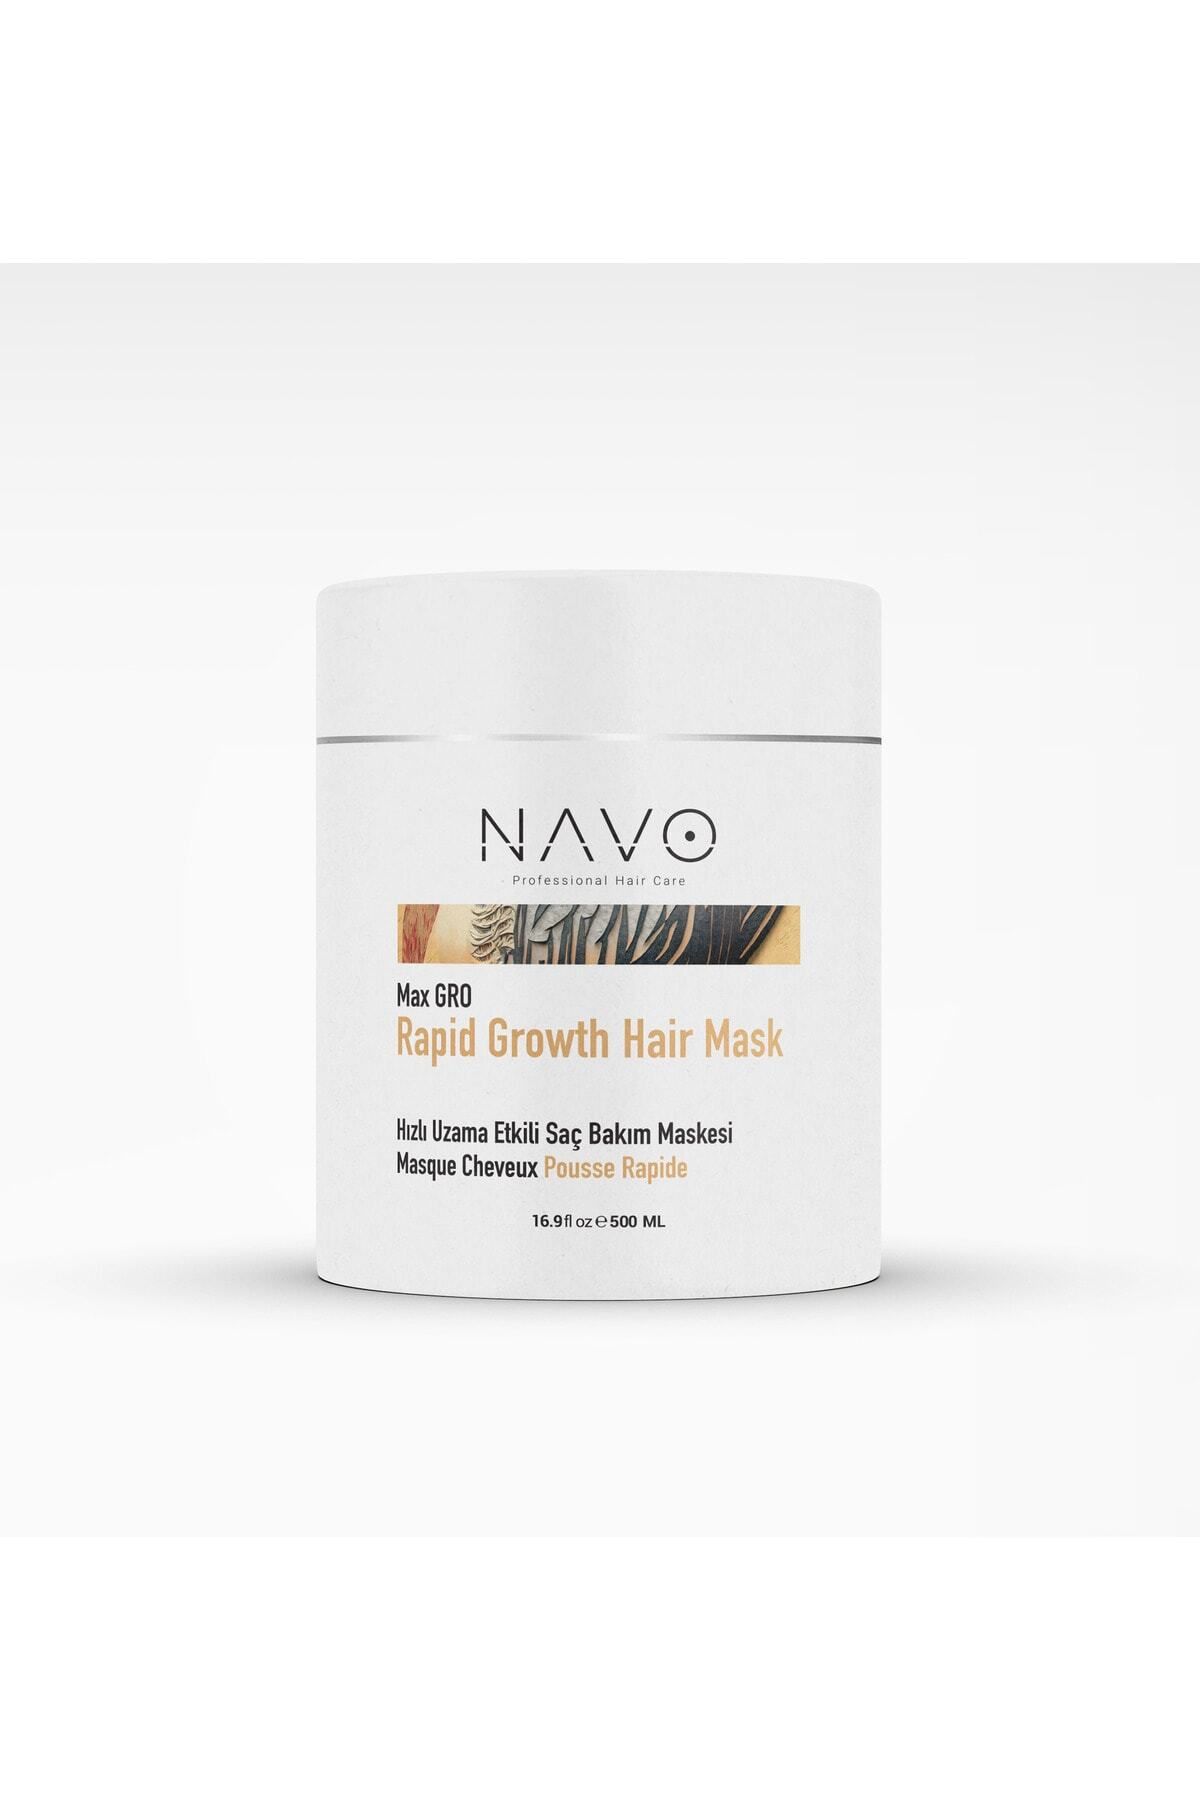 NAVO PROFESSIONAL HAIR CARE Hızlı Uzama Etkili Saç Bakım Maskesi 500ml Rapid Growth Hair Mask /